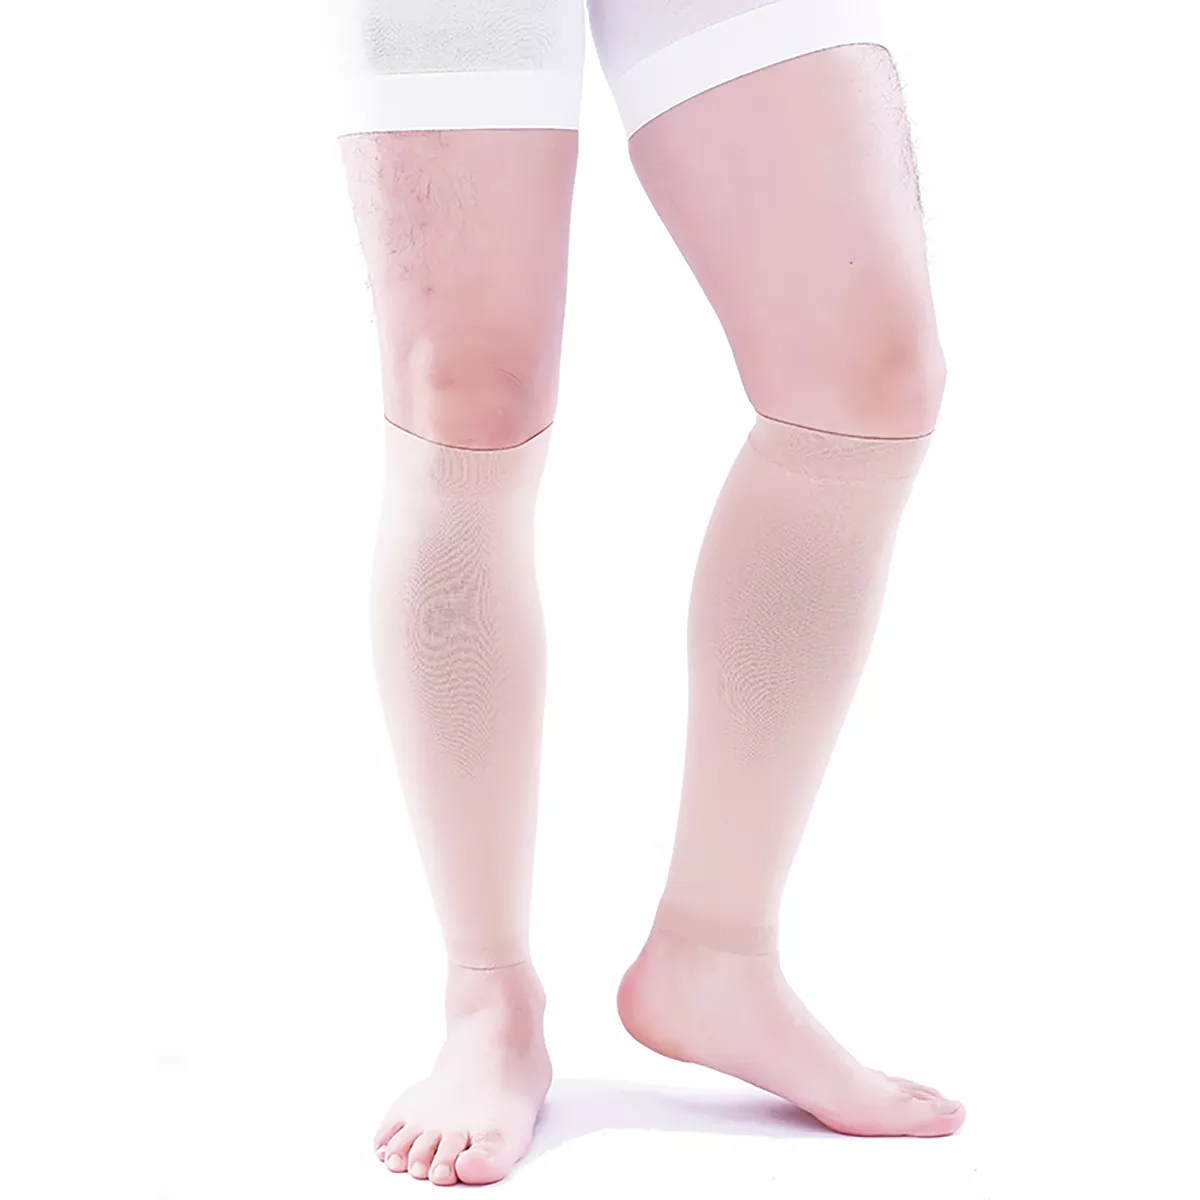 Varcoh ® 30-40 mmHg Men Calf Sleeve Compression Socks Beige